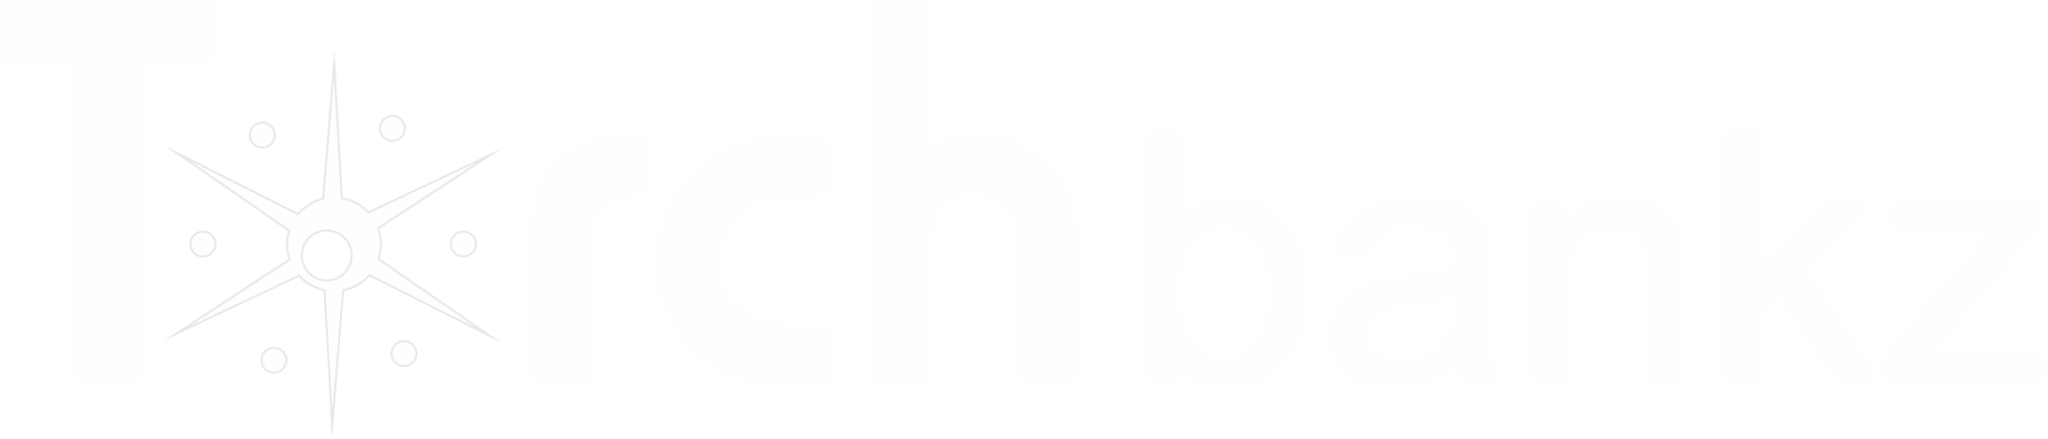 torchbankz logo